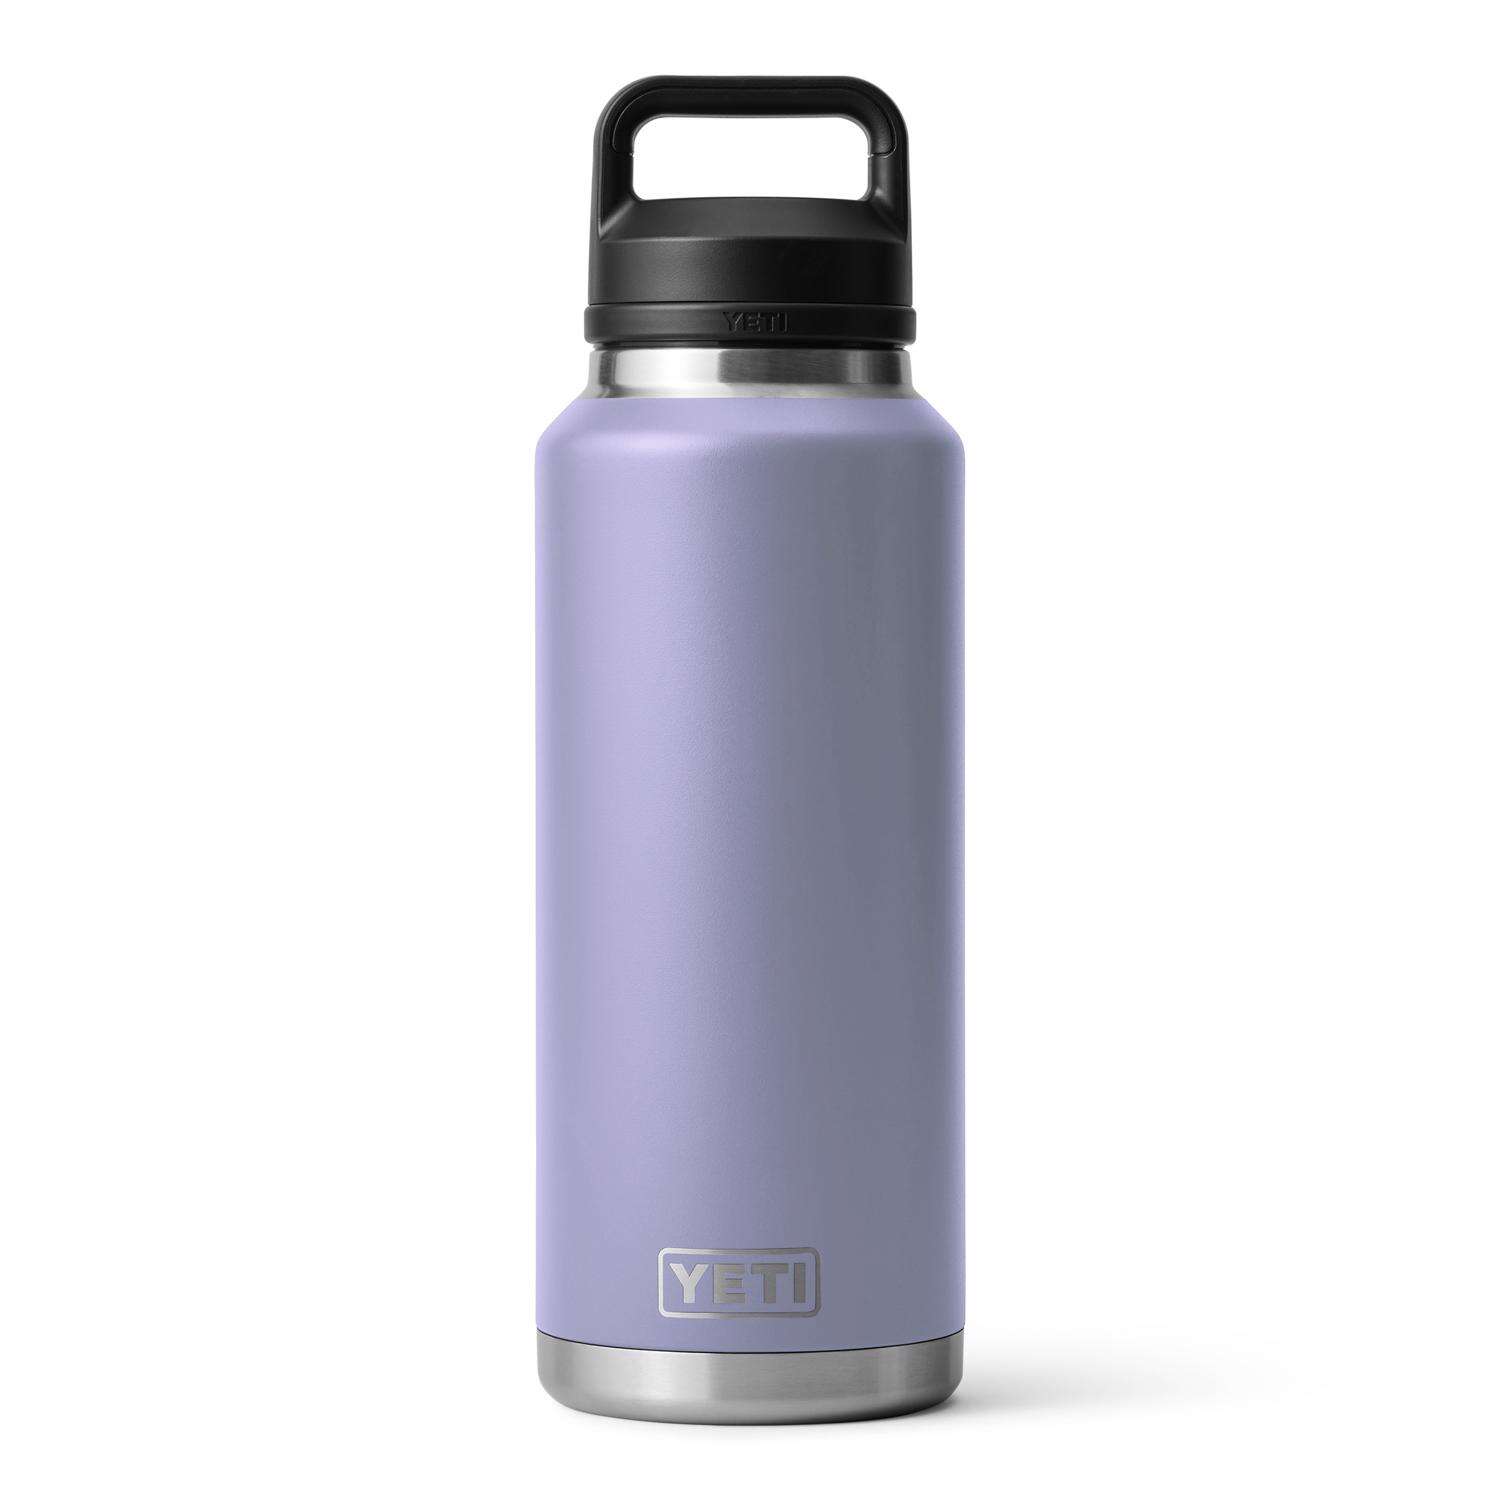 YETI- Rambler Bottle Sling Large / Nordic Blue